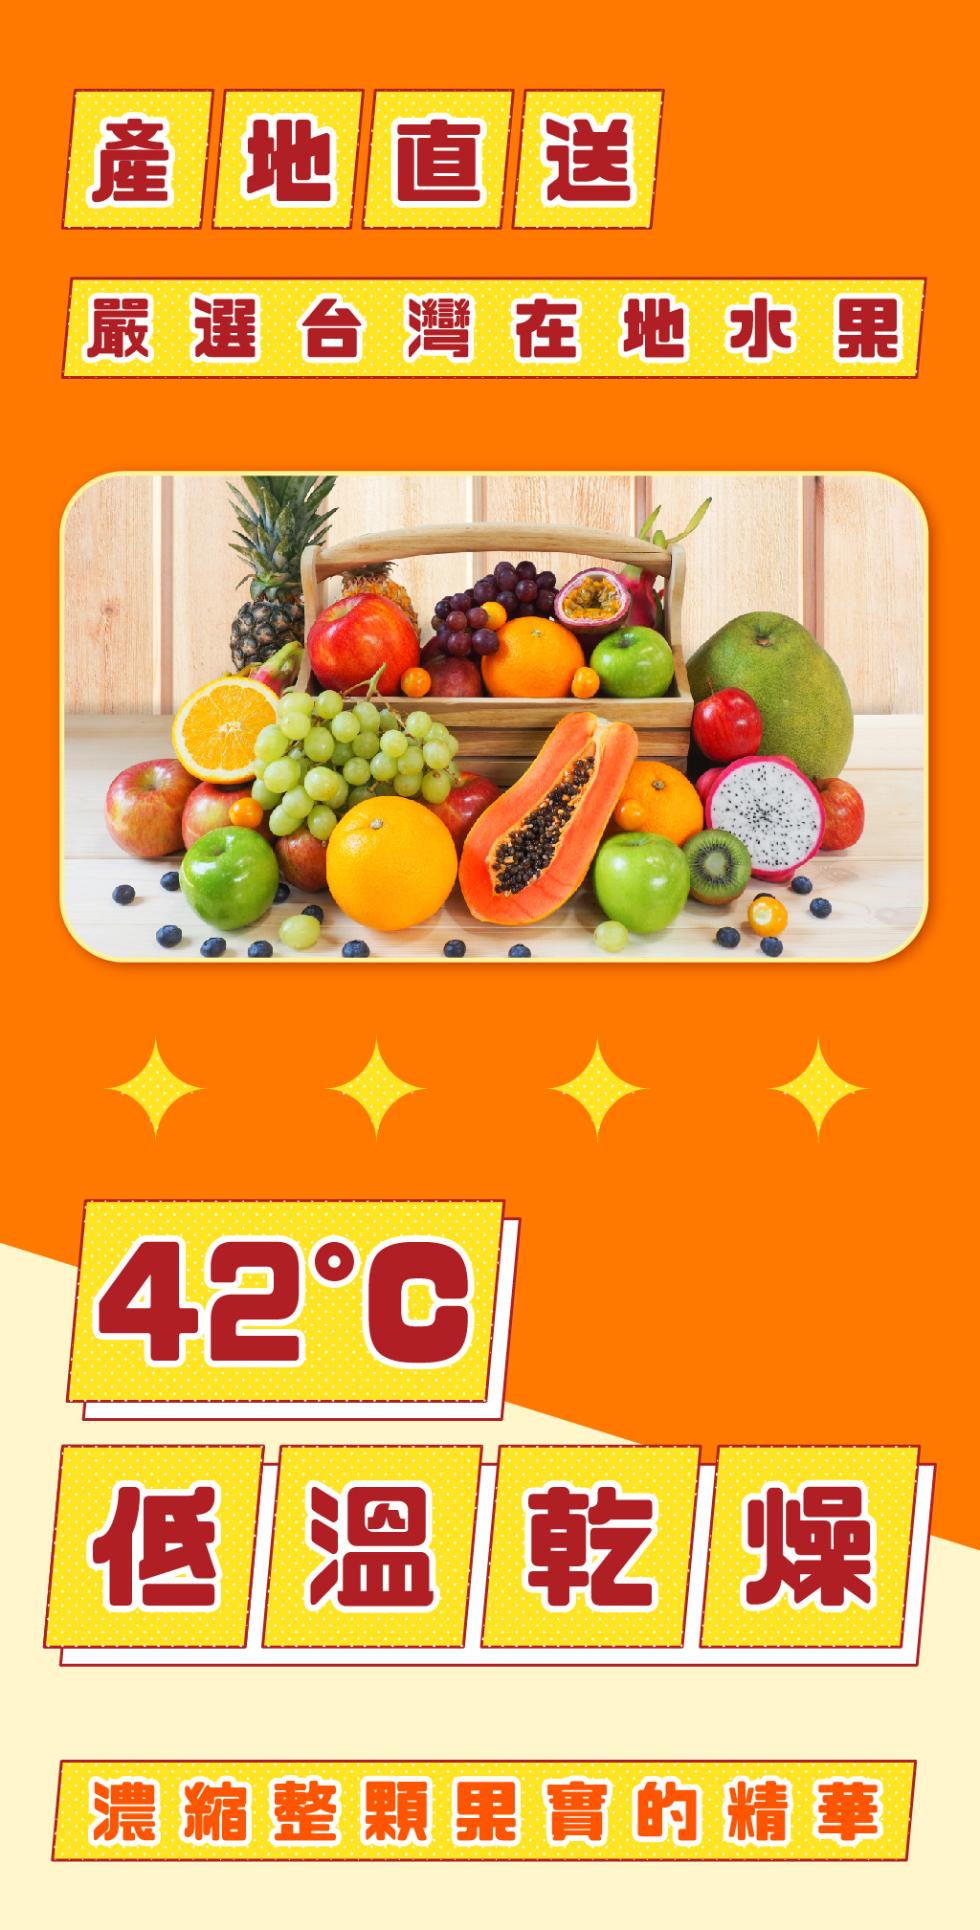 產地直送，嚴選台灣在地水果，42°C，低溫乾燥，濃縮整顆果實的精華。